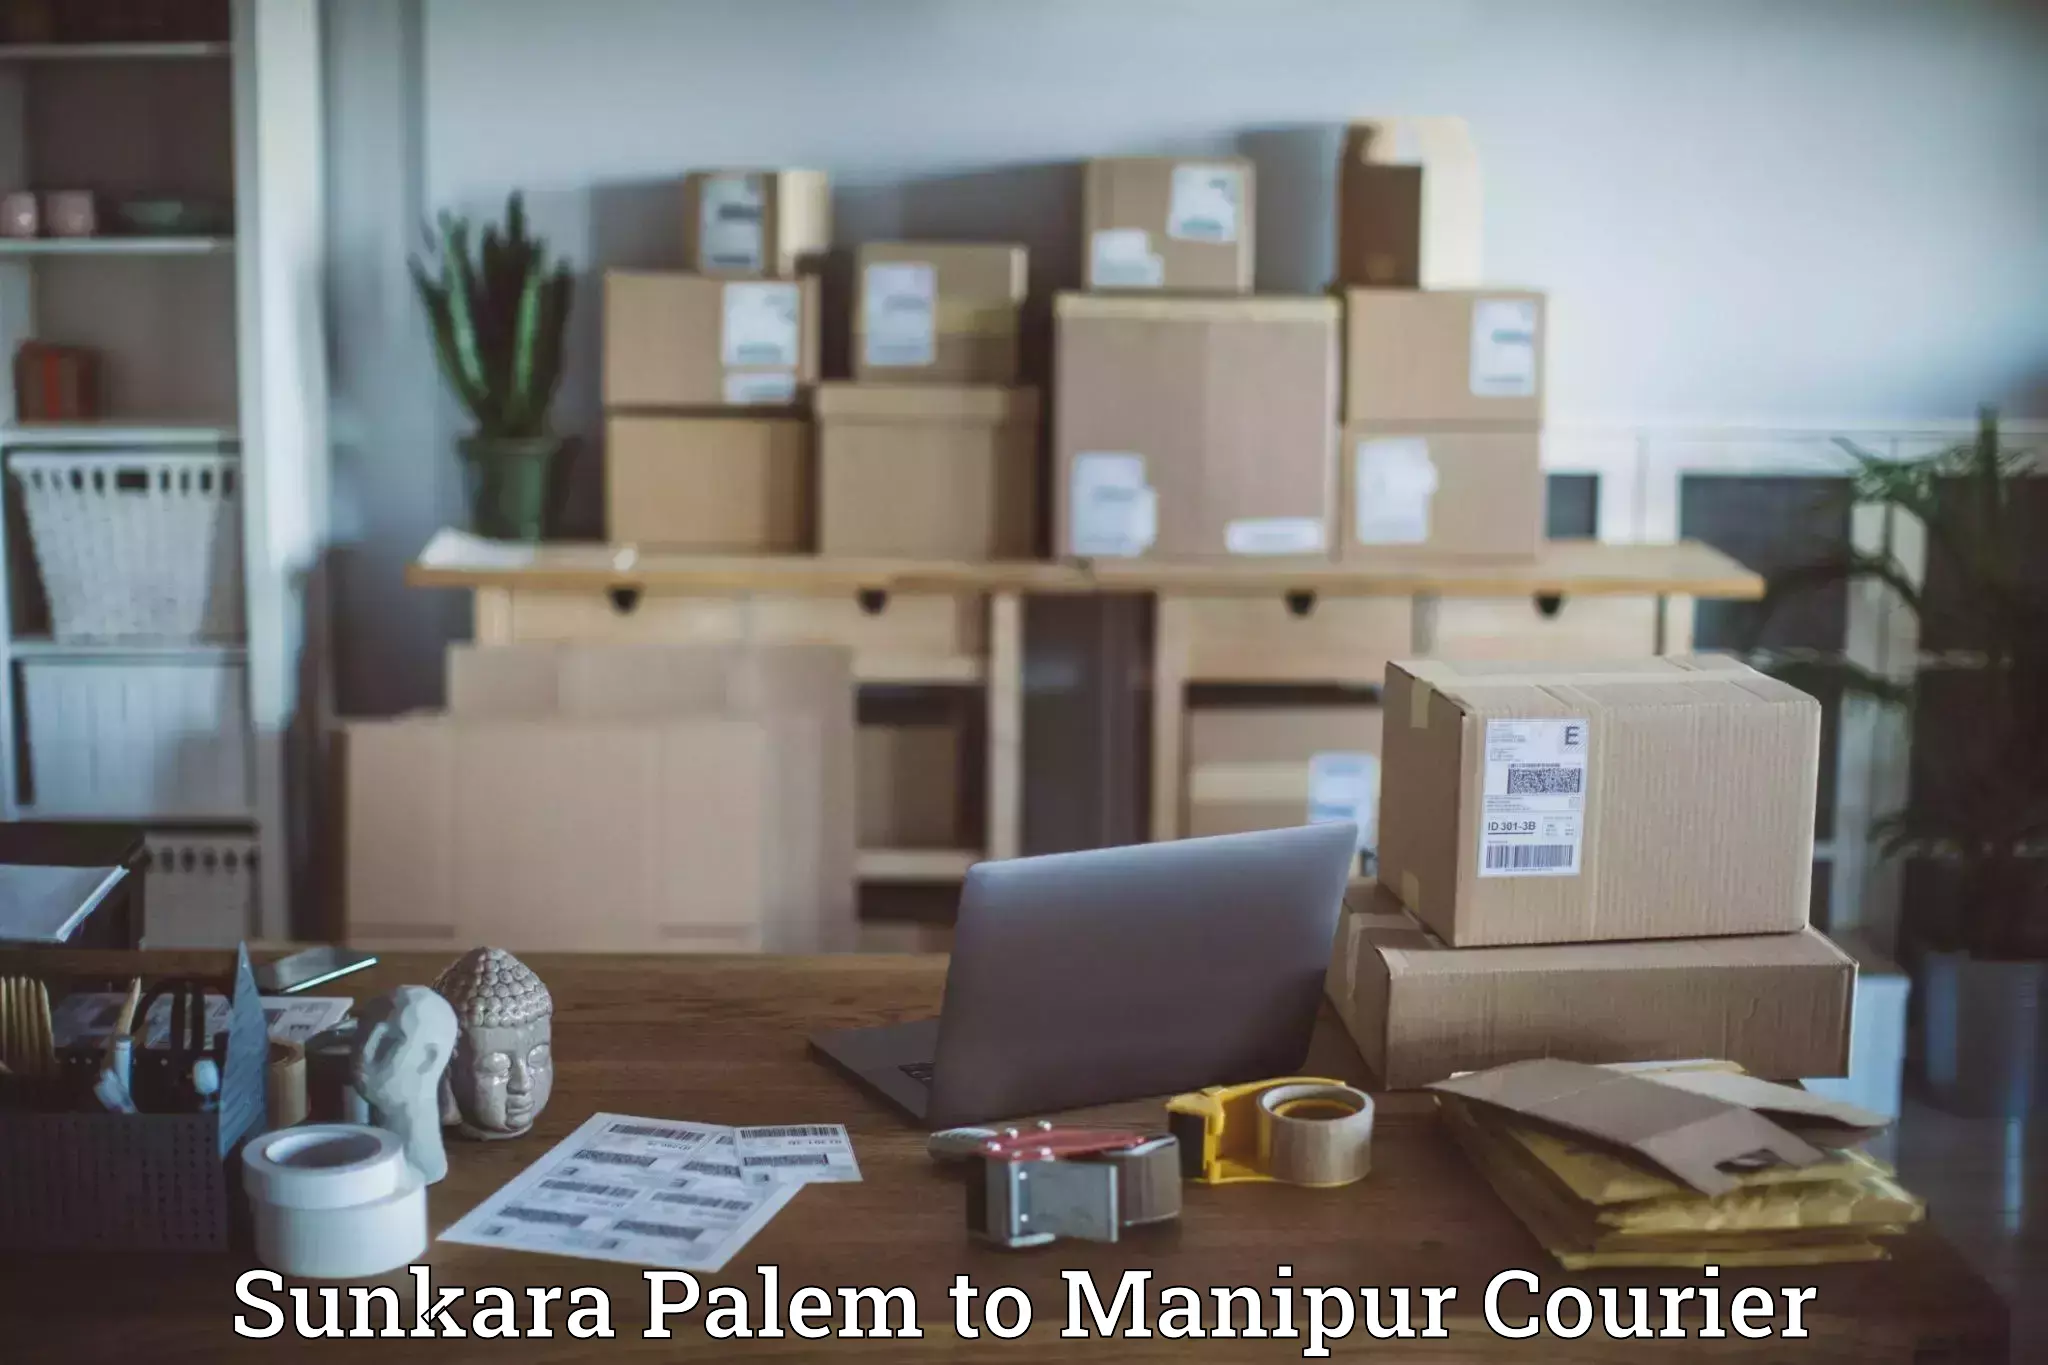 Urgent courier needs Sunkara Palem to Manipur